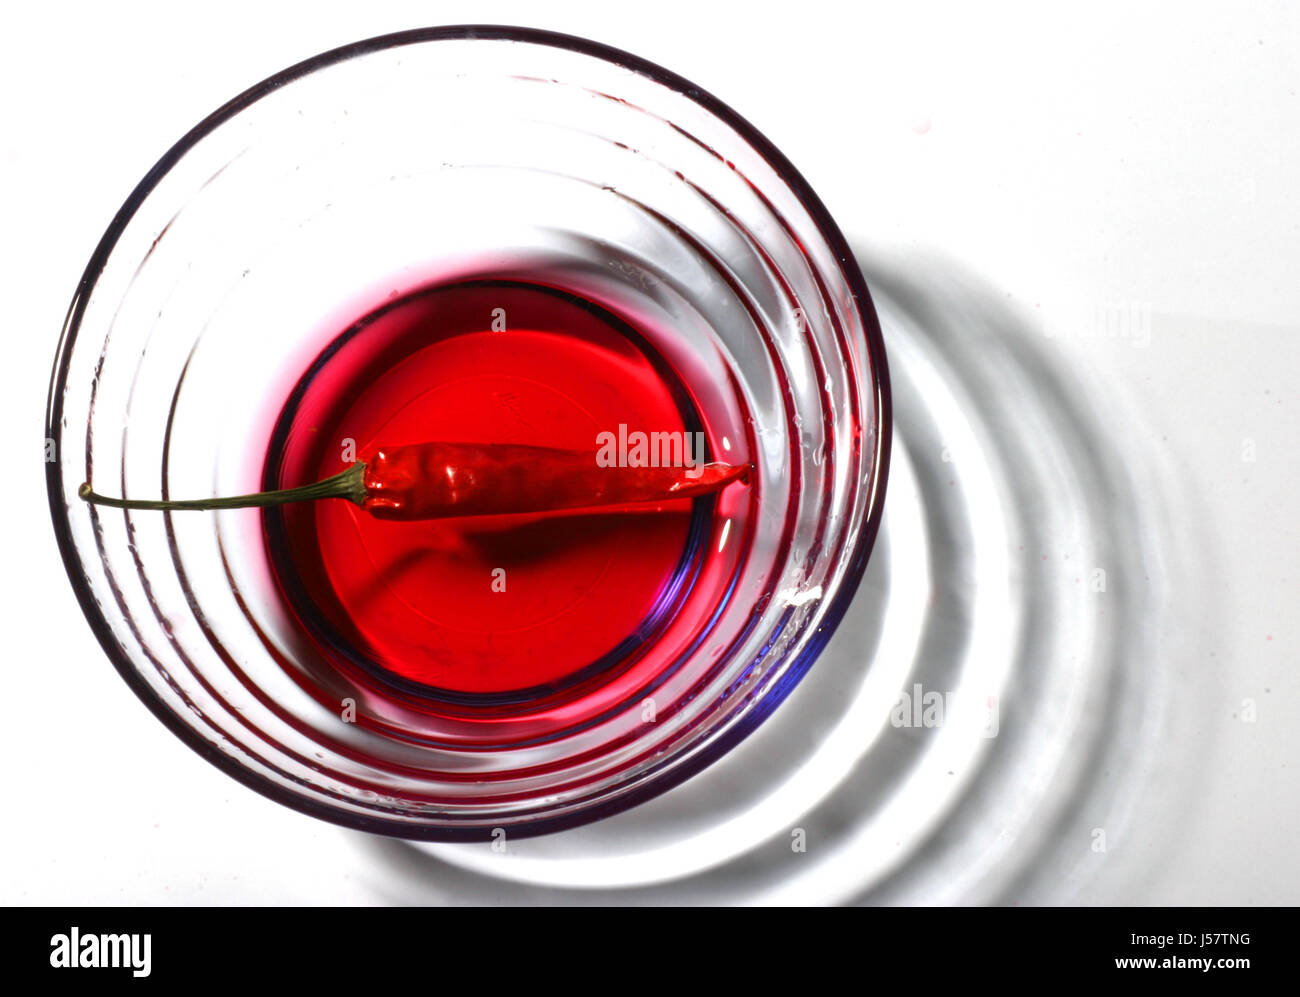 Calice di vetro tumbler cibo aliment salute bere alcool bibs bicchieri Foto Stock